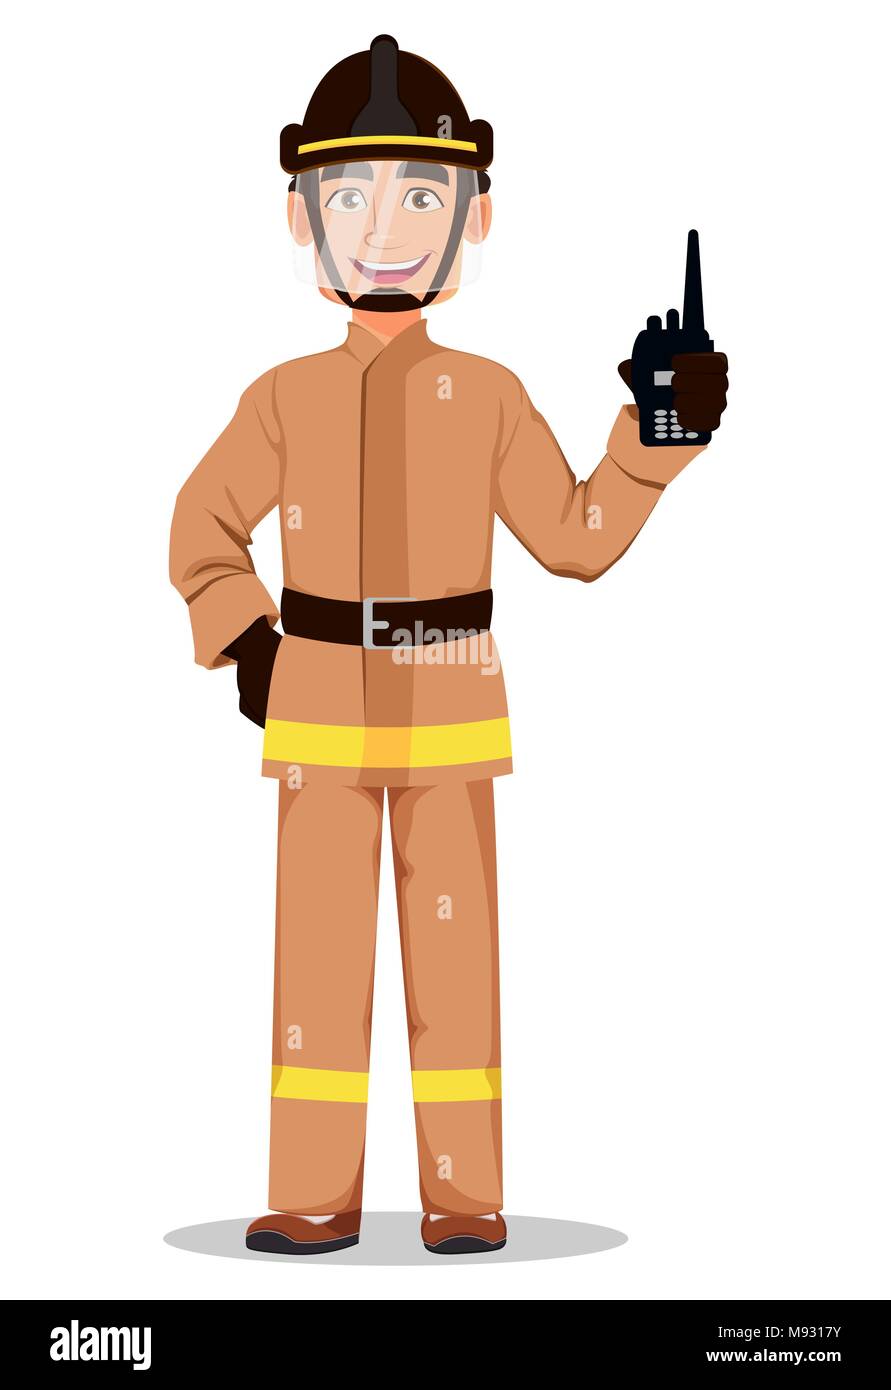 Bombero Profesional En Uniforme Y Casco De Seguridad Fireman Cartoon